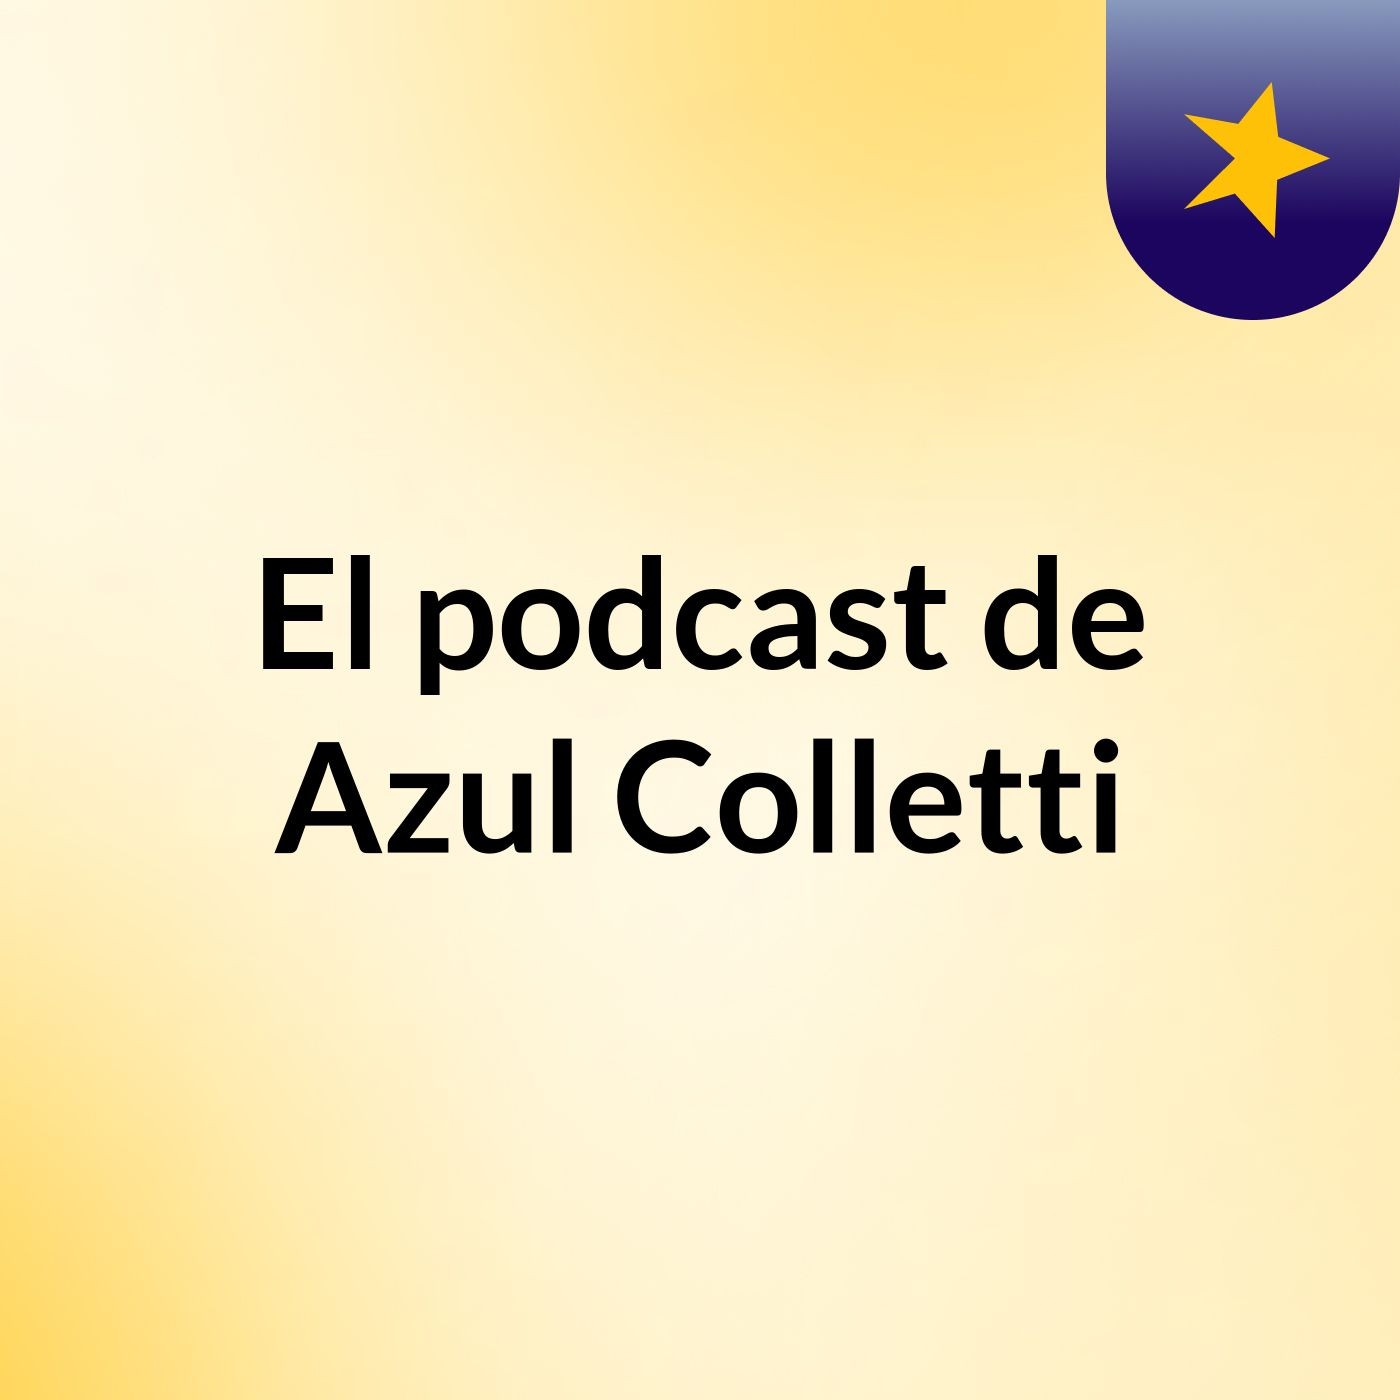 El podcast de Azul Colletti